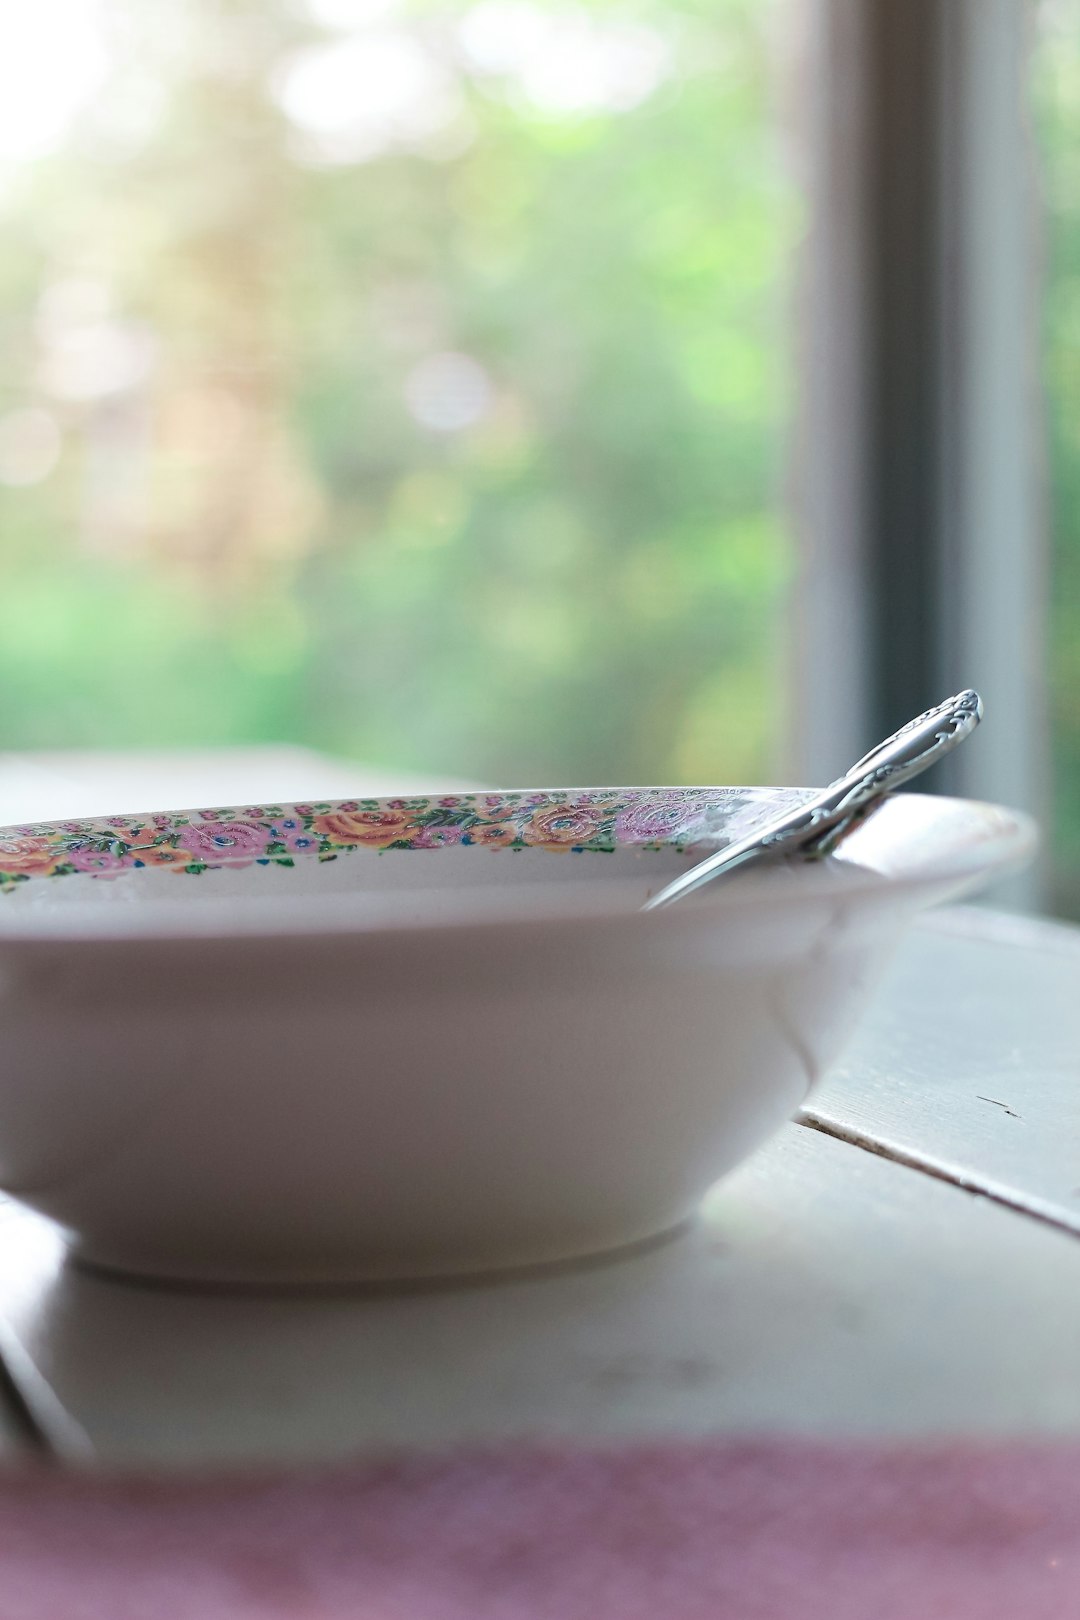 silver spoon on white ceramic bowl